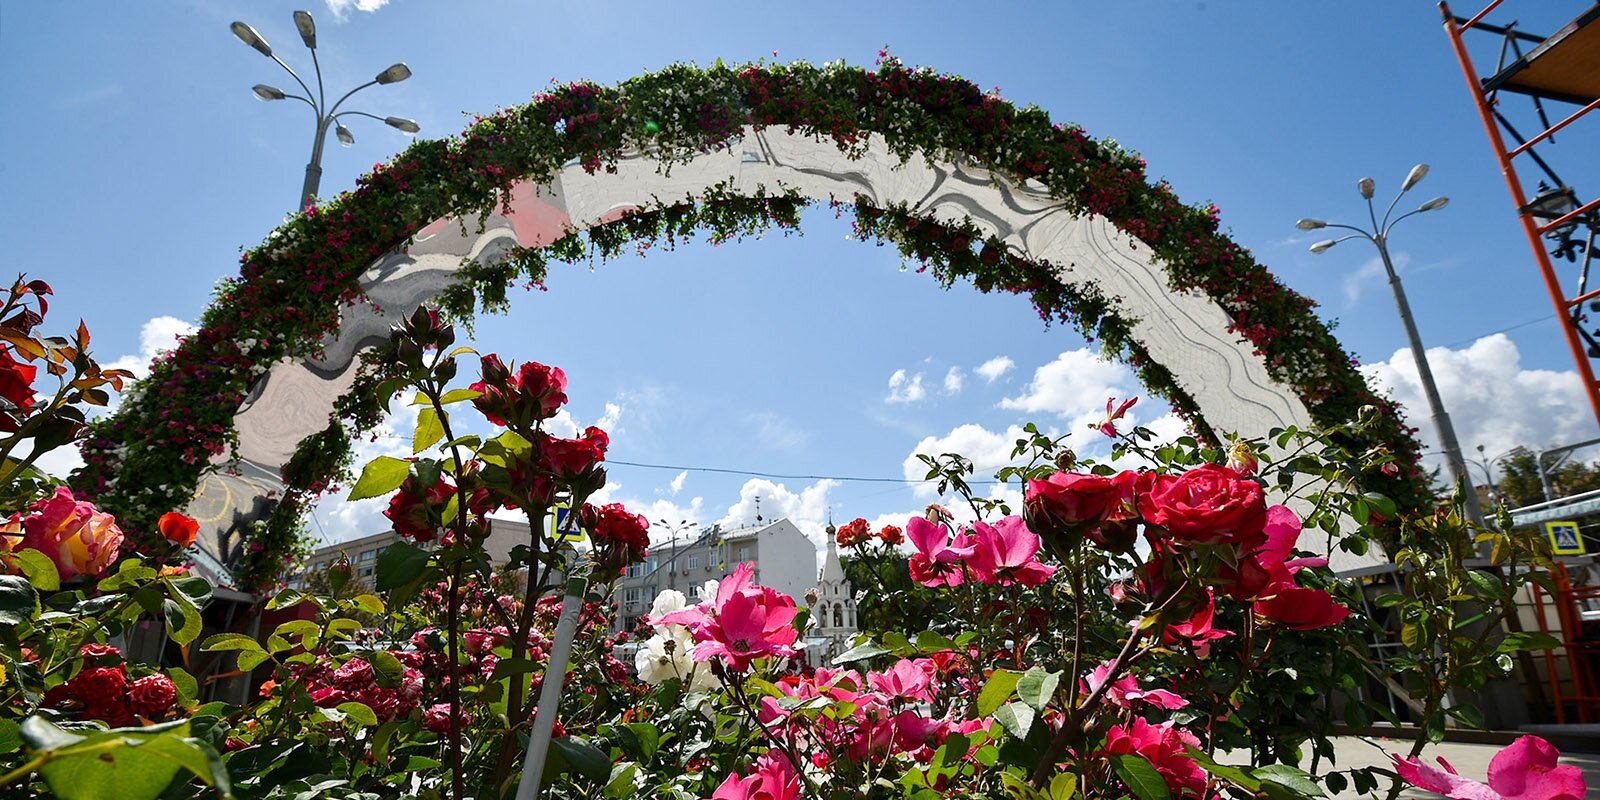 Увидеть 27 садов и цветочных композиций возможно до 11 сентября. Фото: сайт мэра Москвы